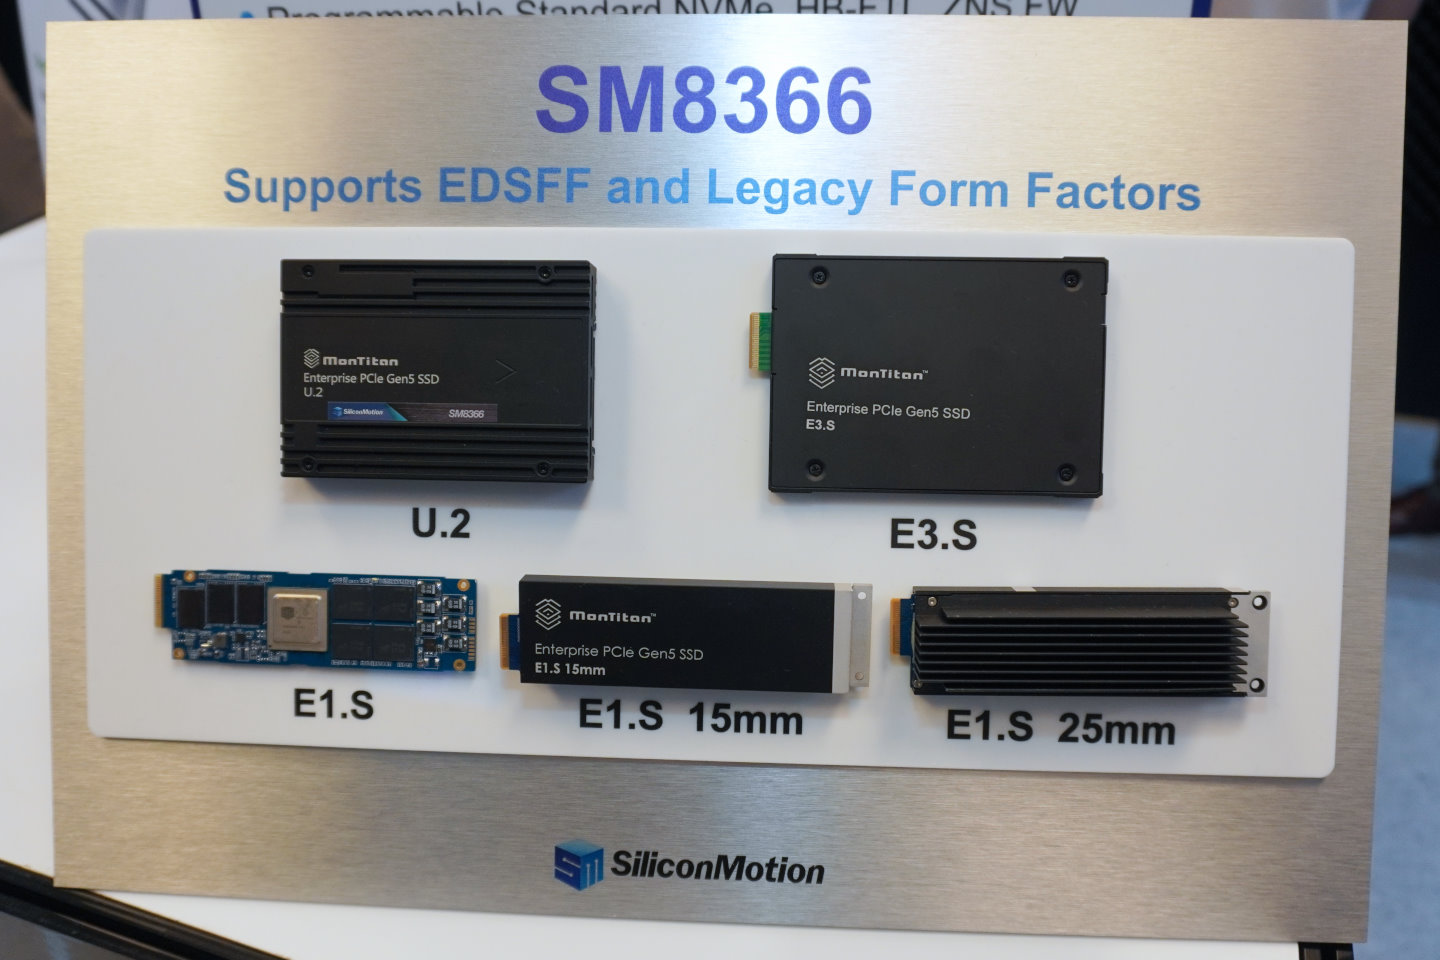 載SM8366控制器的固態硬碟能夠做成U.2、E1.S、E1.S 15mm、E1.S25mm、E3.S尺寸。